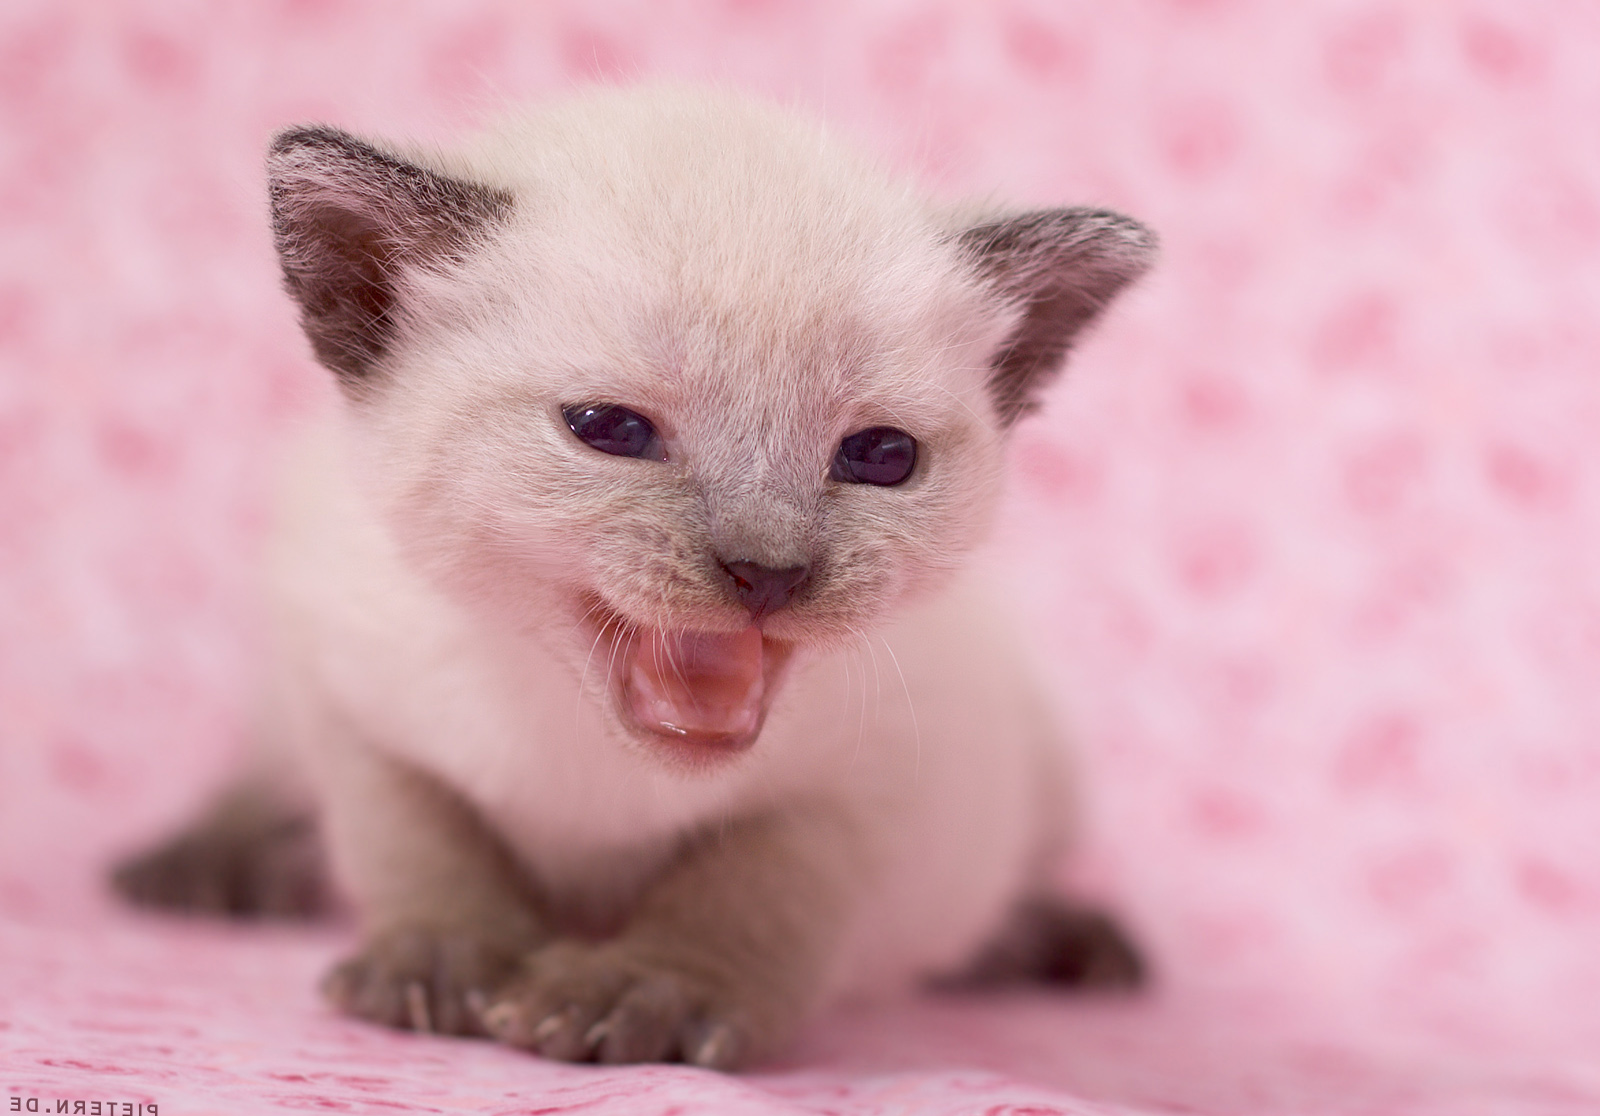 Newborn Cute Kitten Wallpaper